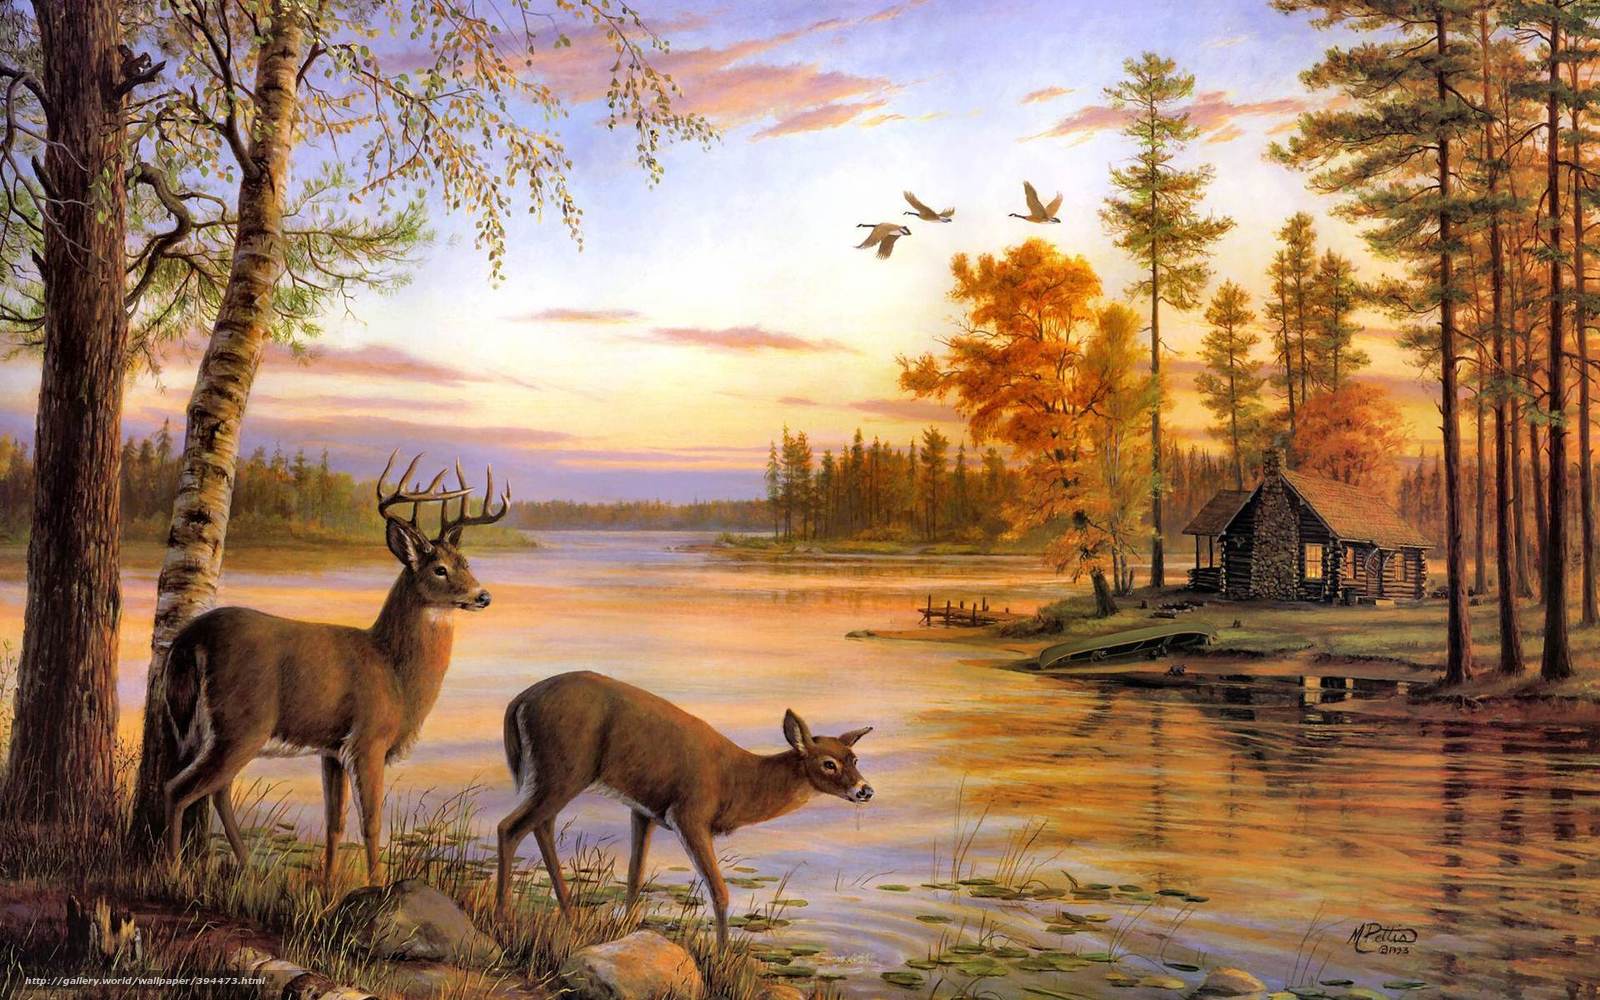 Wallpaper Painting Deer Nature River Desktop